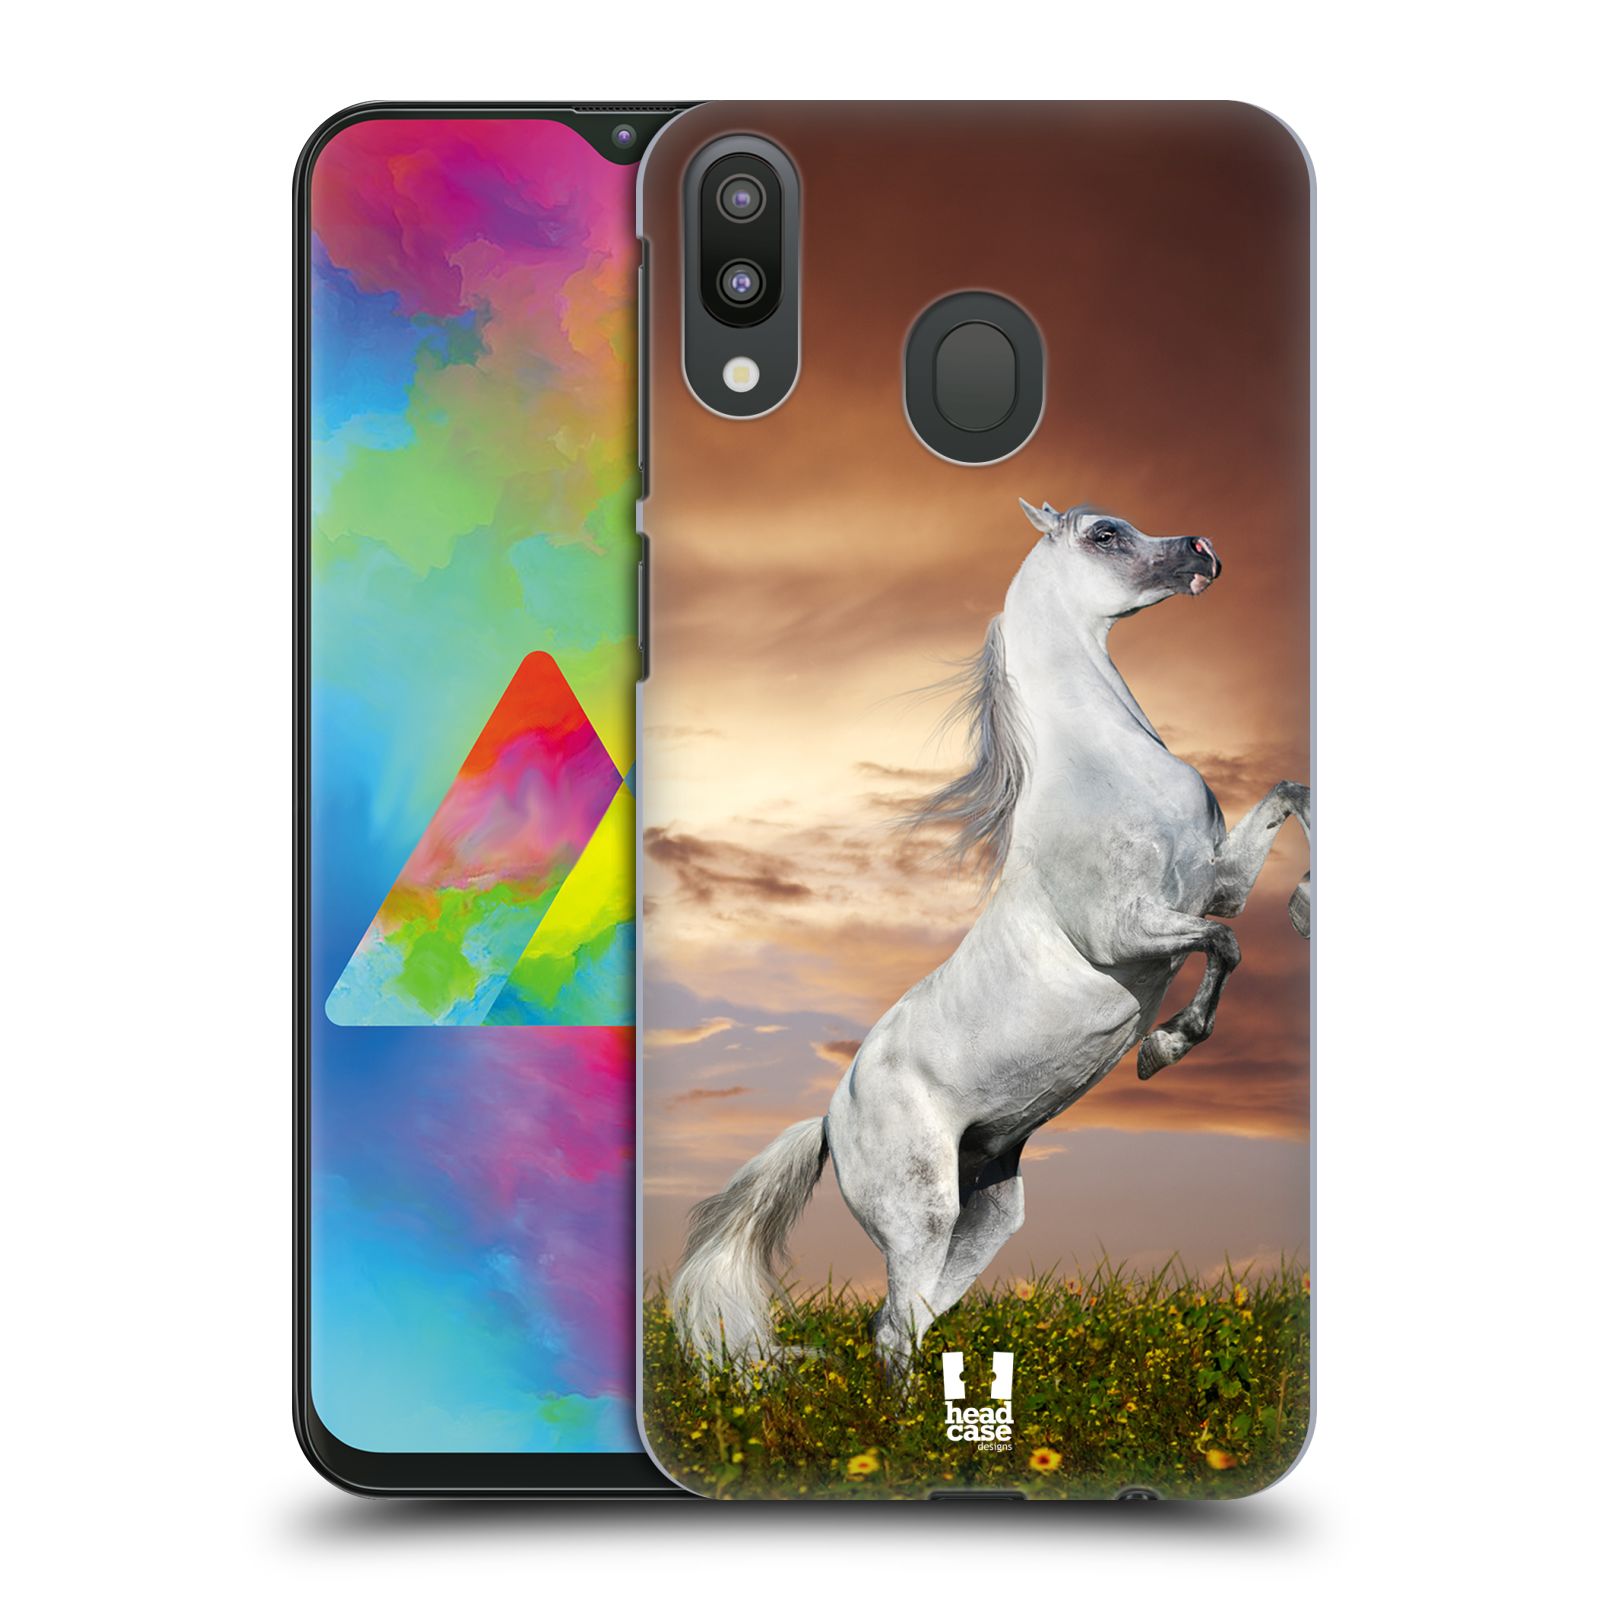 Zadní obal pro mobil Samsung Galaxy M20 - HEAD CASE - Svět zvířat divoký kůň